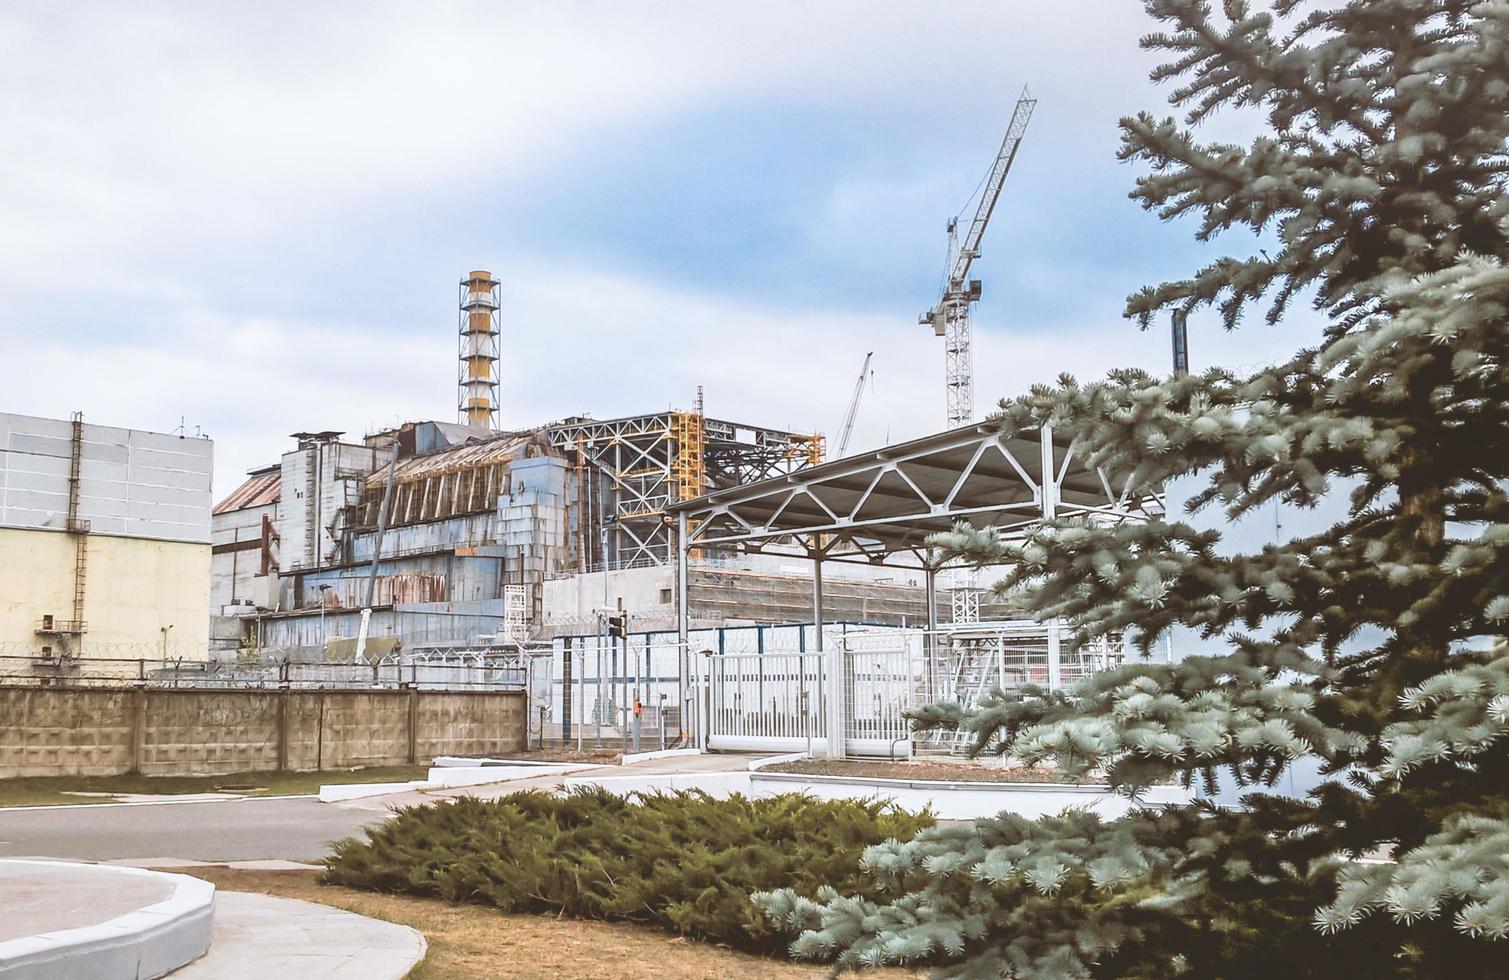 pripyat, ucrania, 2021 - cuarta unidad de potencia de la central nuclear de chernobyl foto